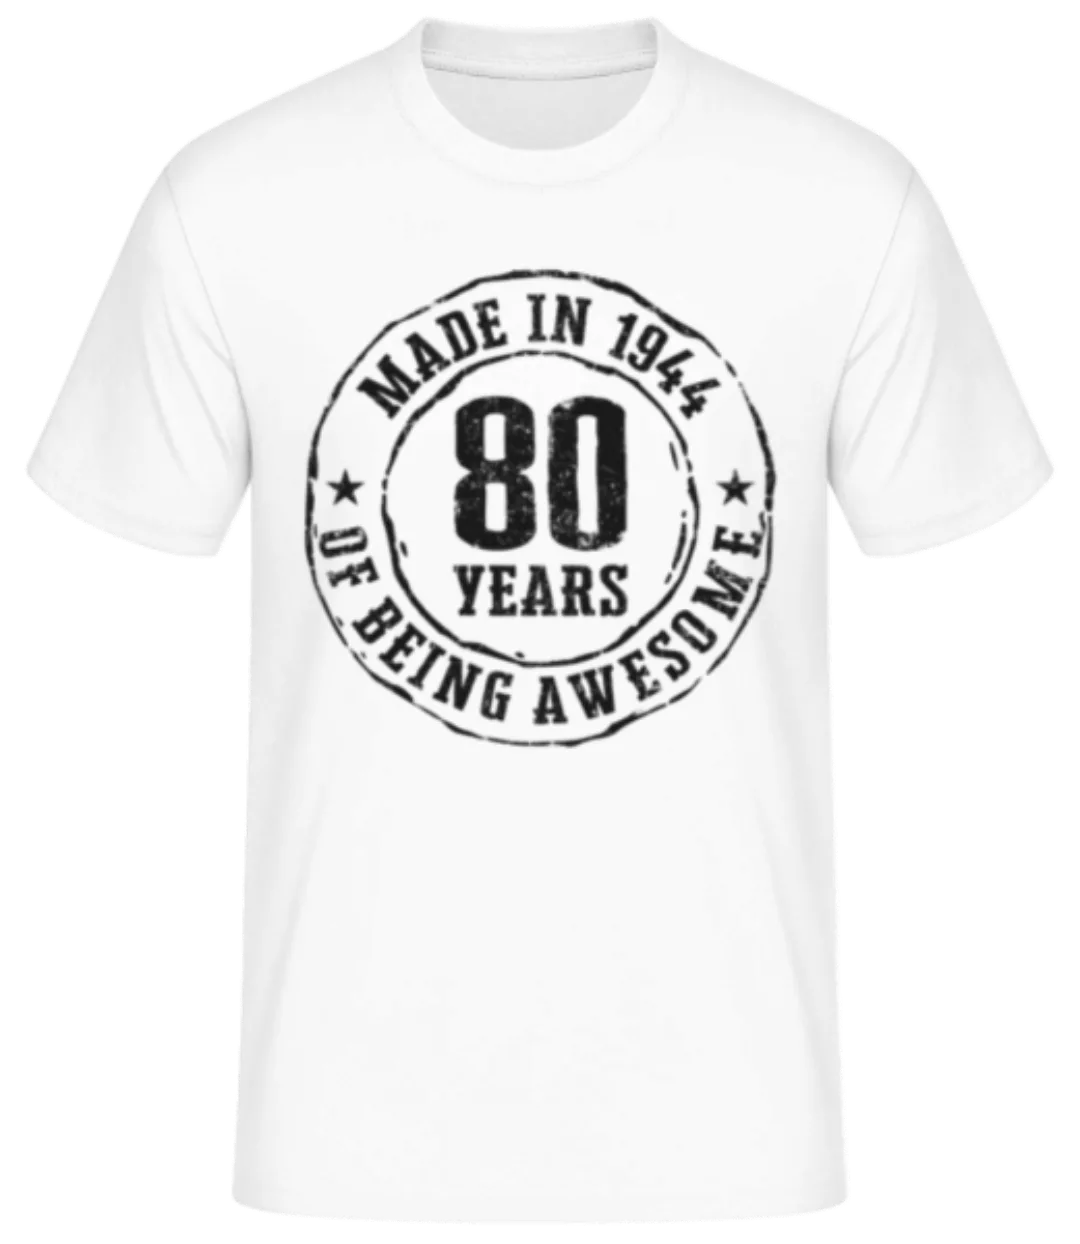 Made In 1944 · Männer Basic T-Shirt günstig online kaufen